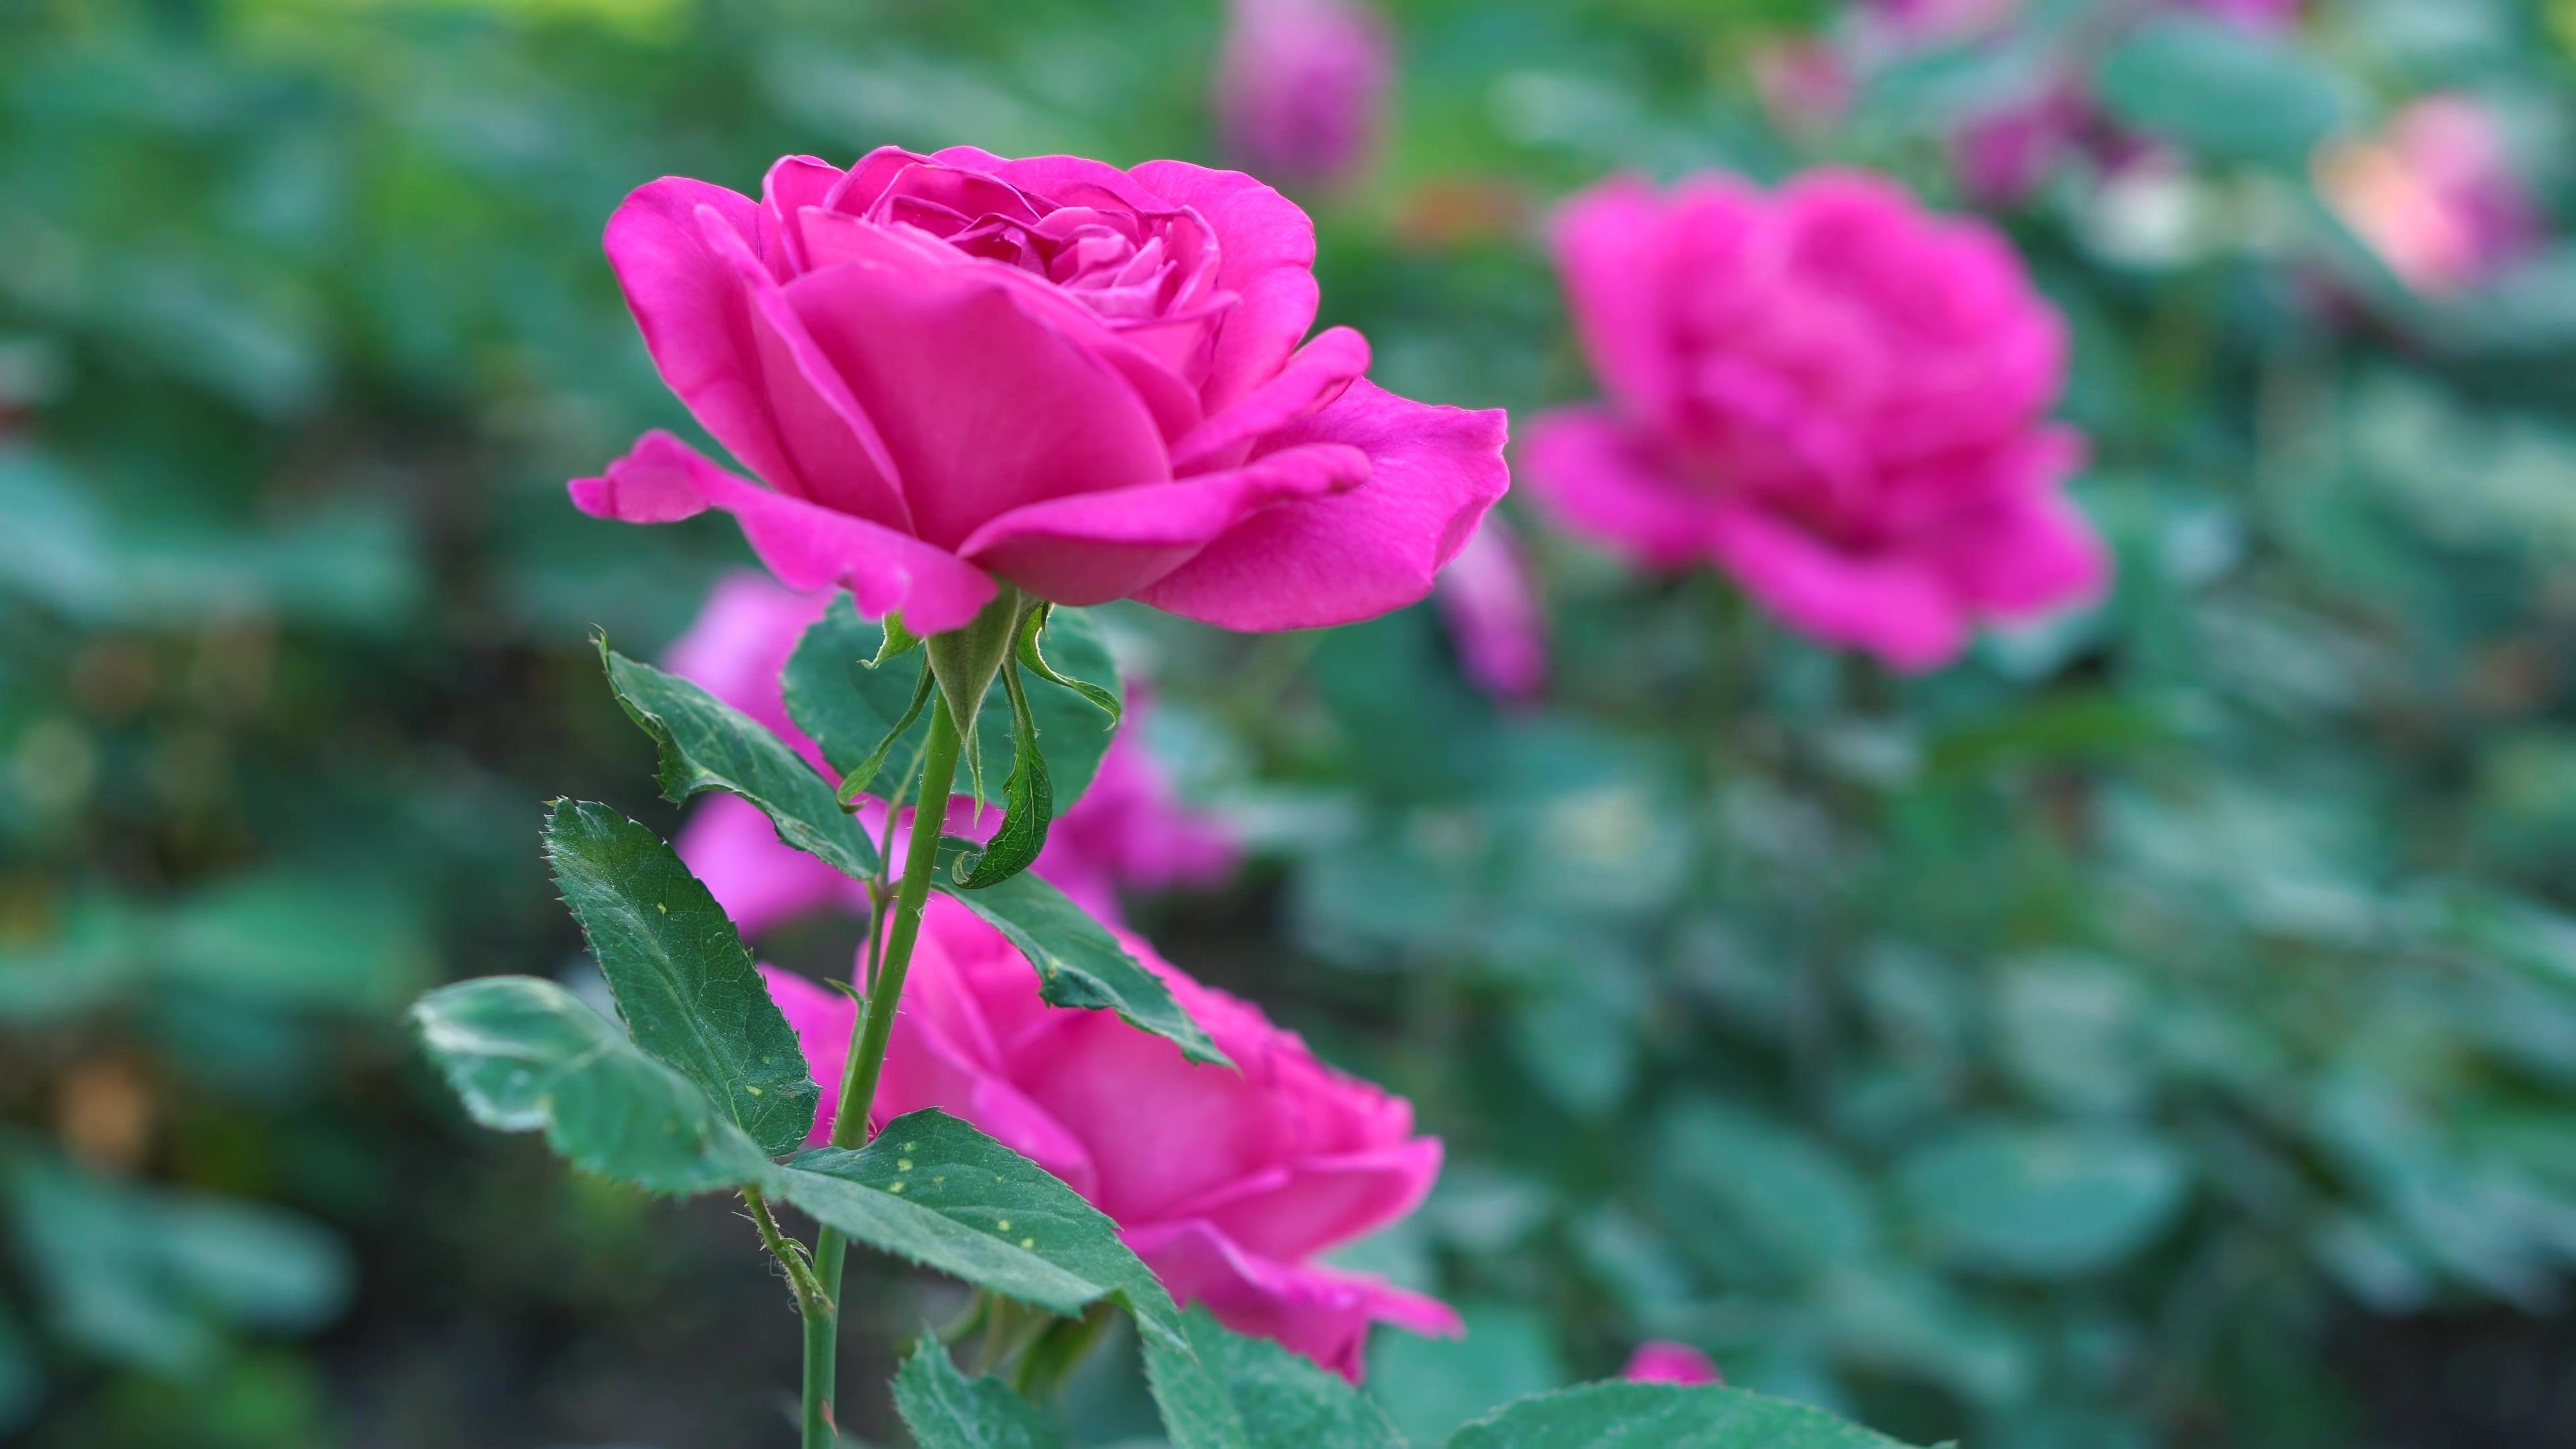 3840x2160 Pink Rose Flower Hình nền 4K Ultra HD, Hình ảnh, Hình ảnh hoặc Hình ảnh